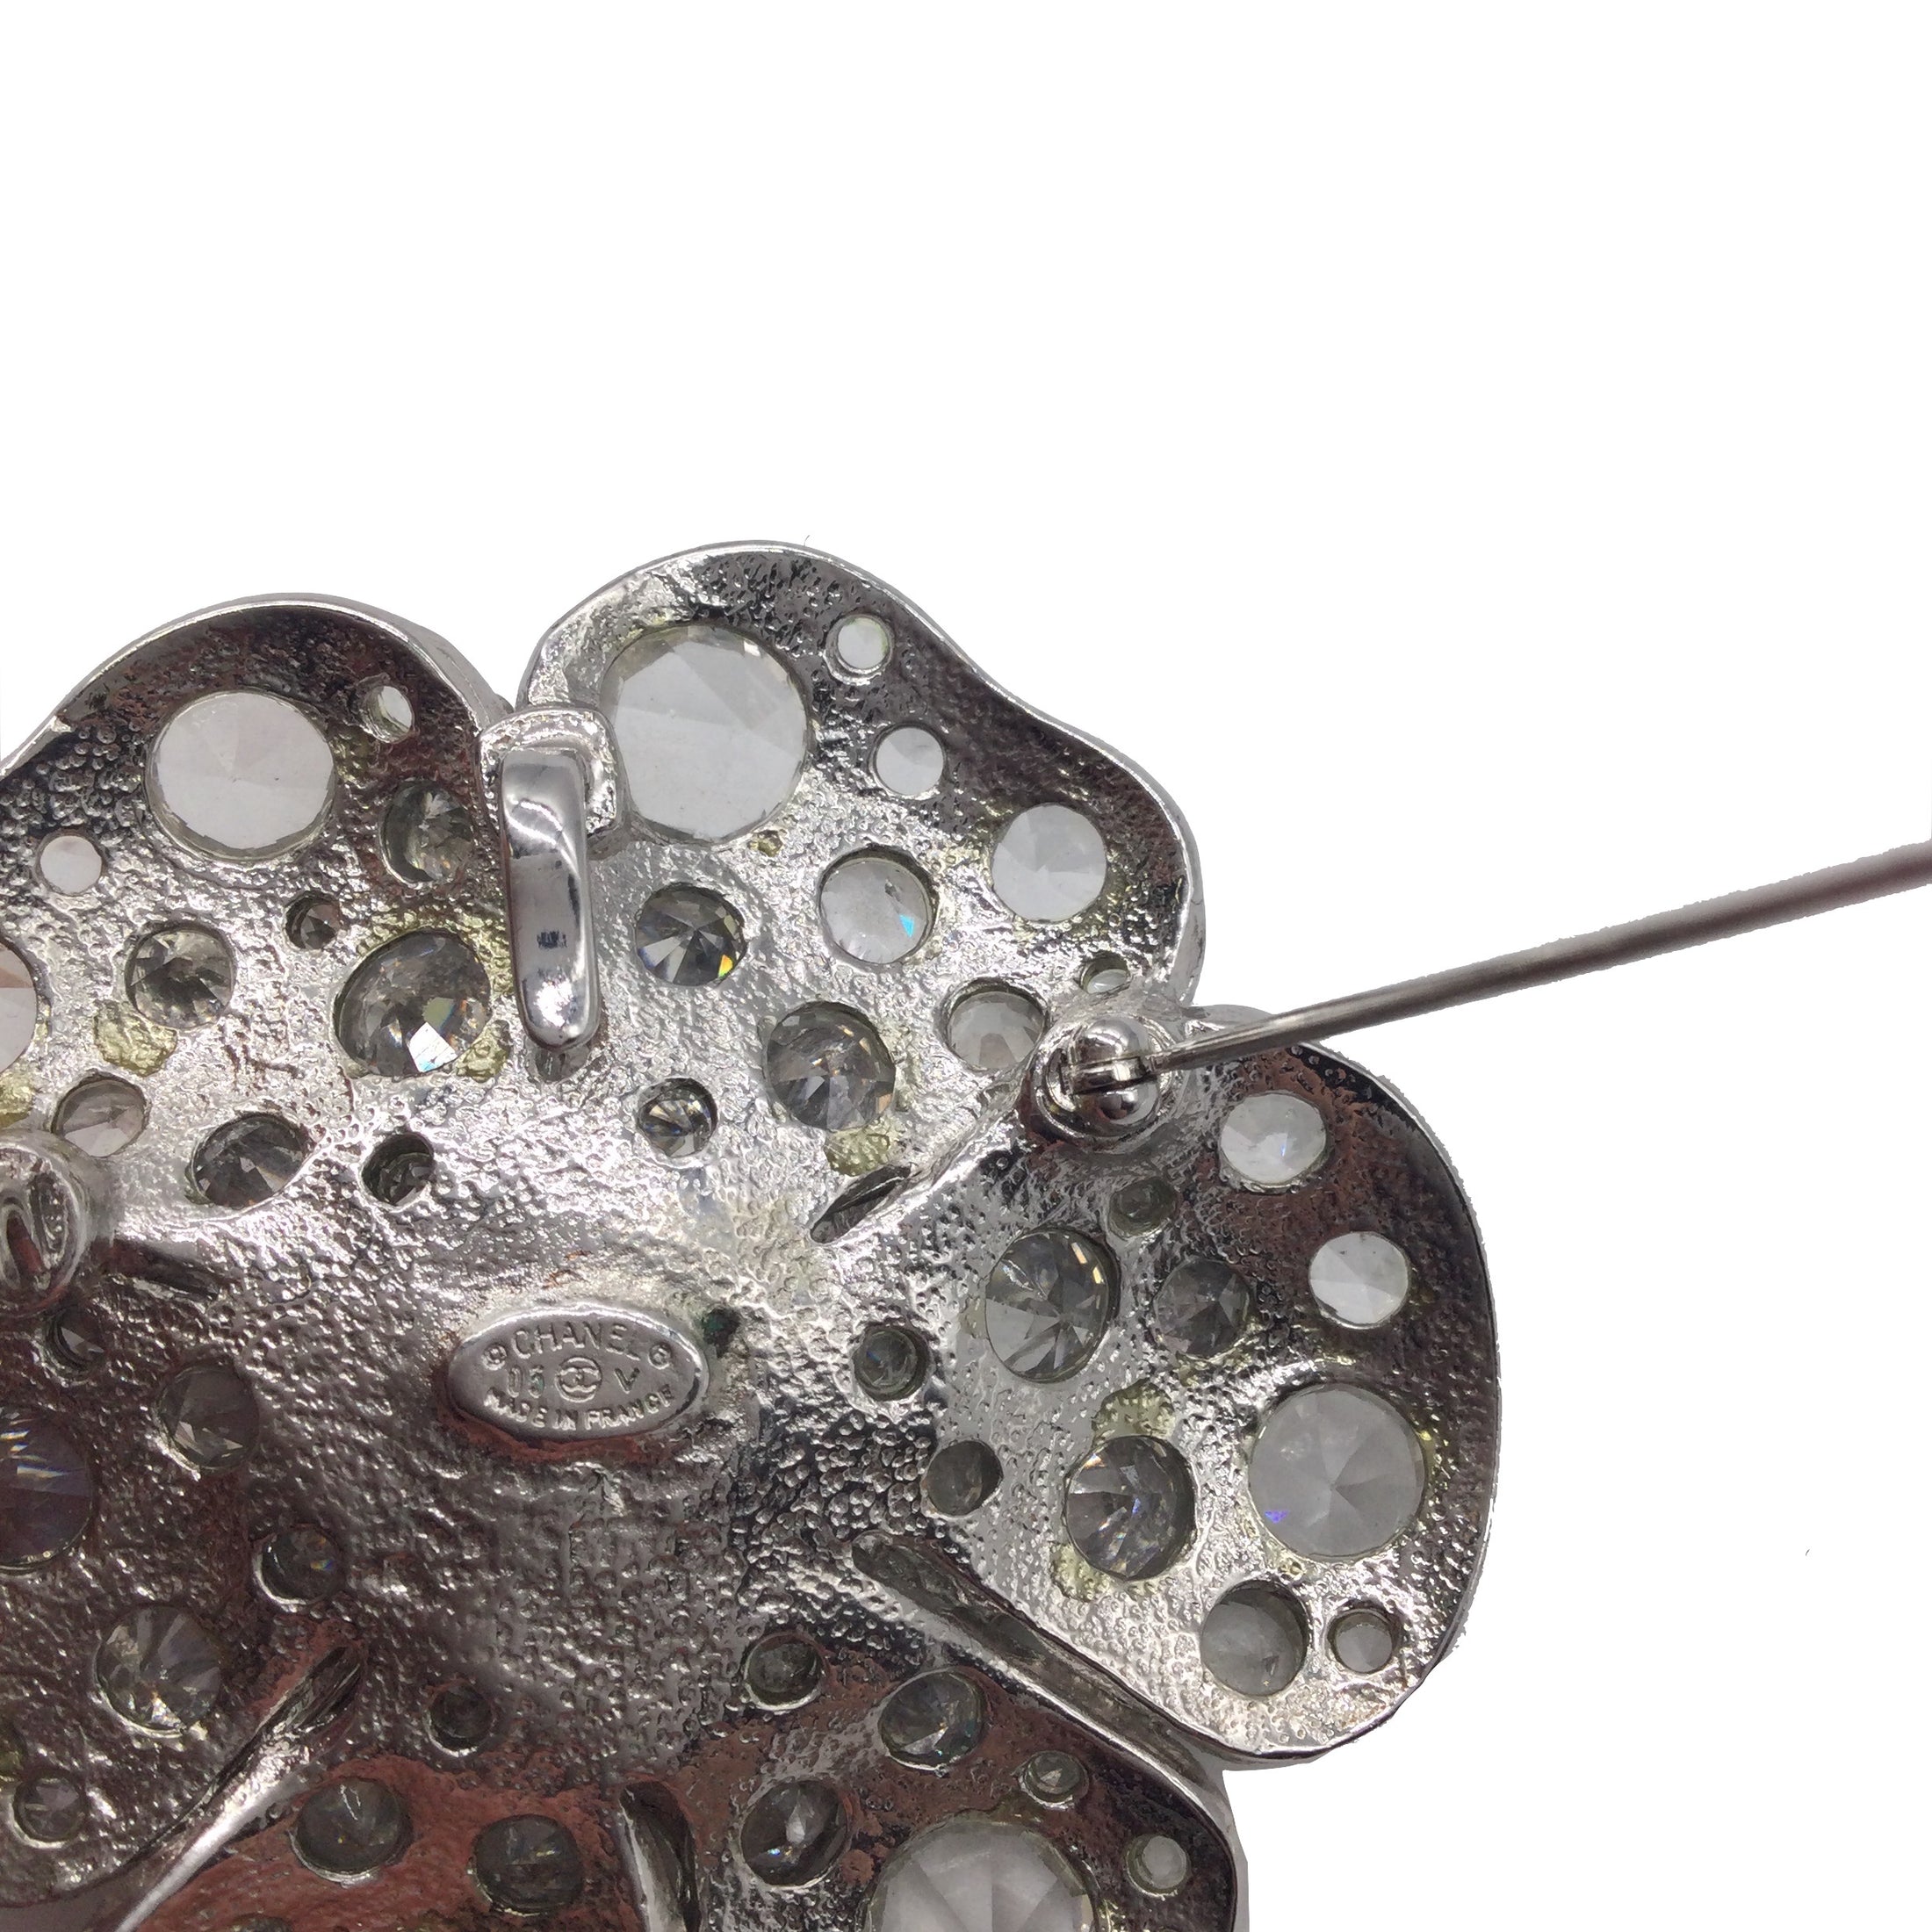 Chanel Silver Rhinestone Studded CC Logo Camellia Flower Brooch Pin